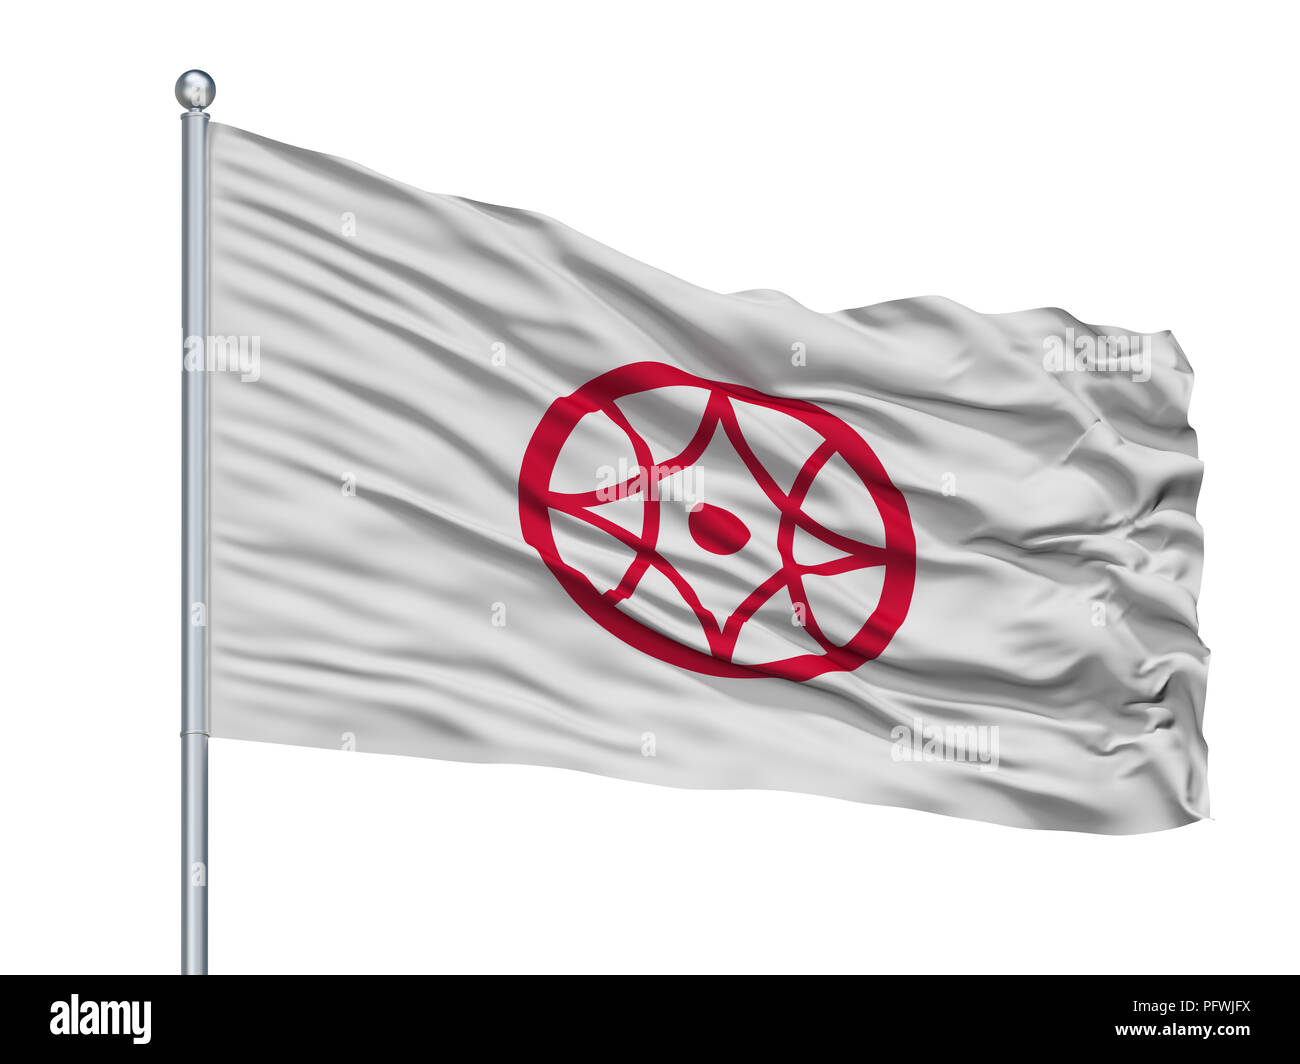 Yinhe drapeau sur mât, Japon, préfecture de Mie, isolé sur fond blanc Banque D'Images